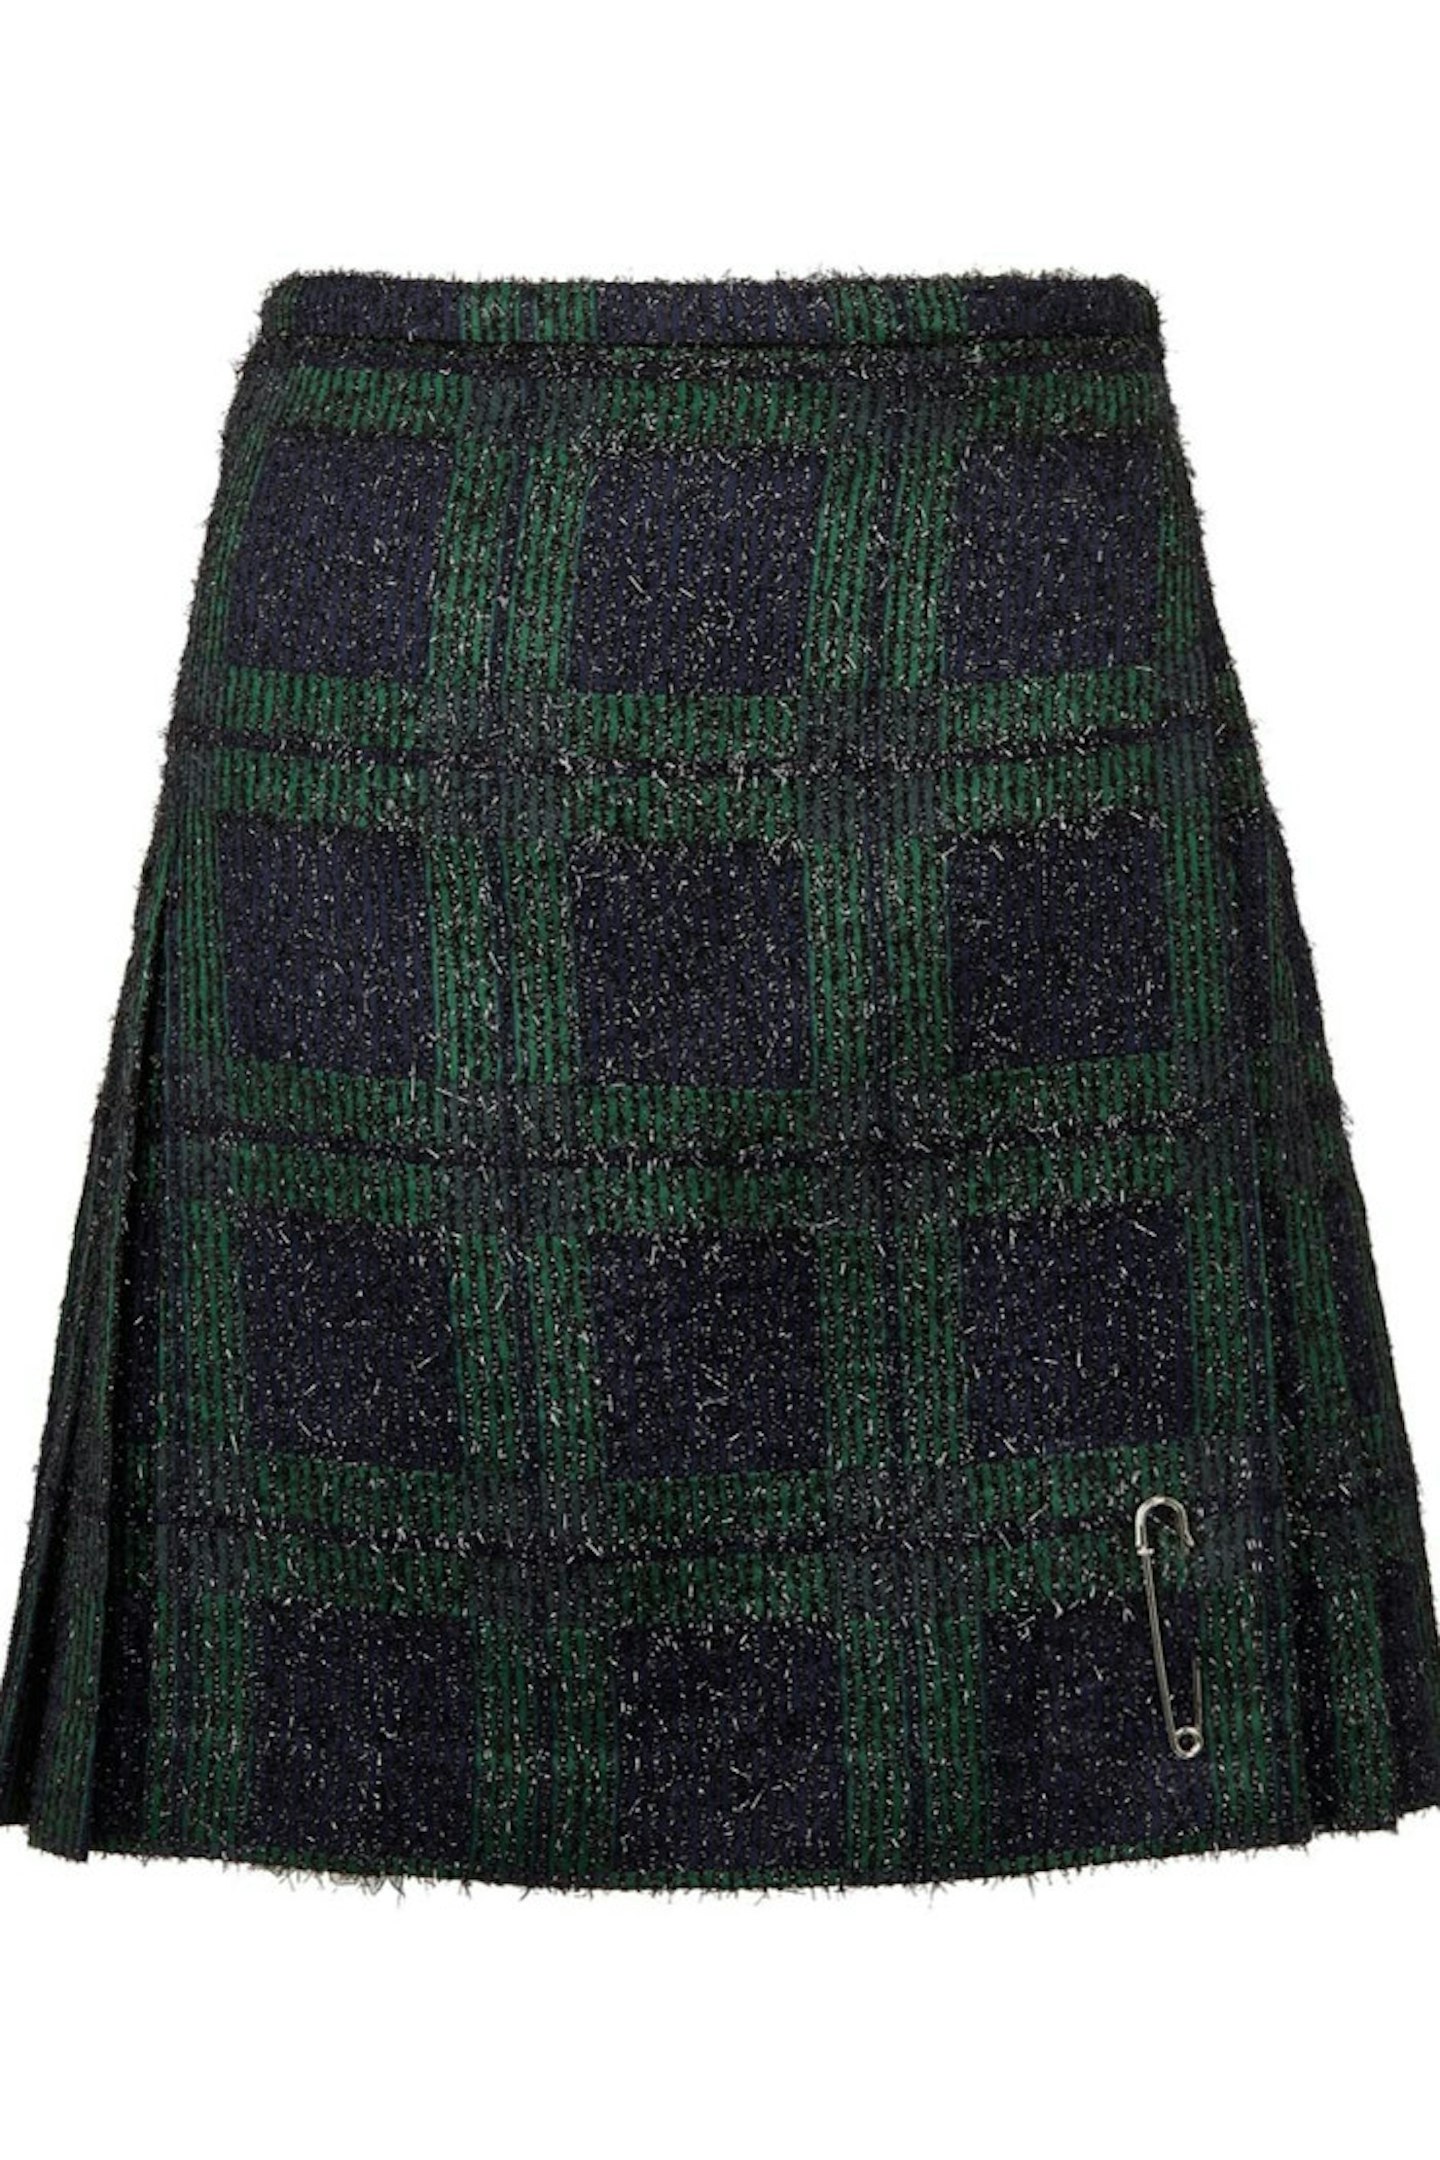 Le Kilt Wool Blend Kilt, £385.00